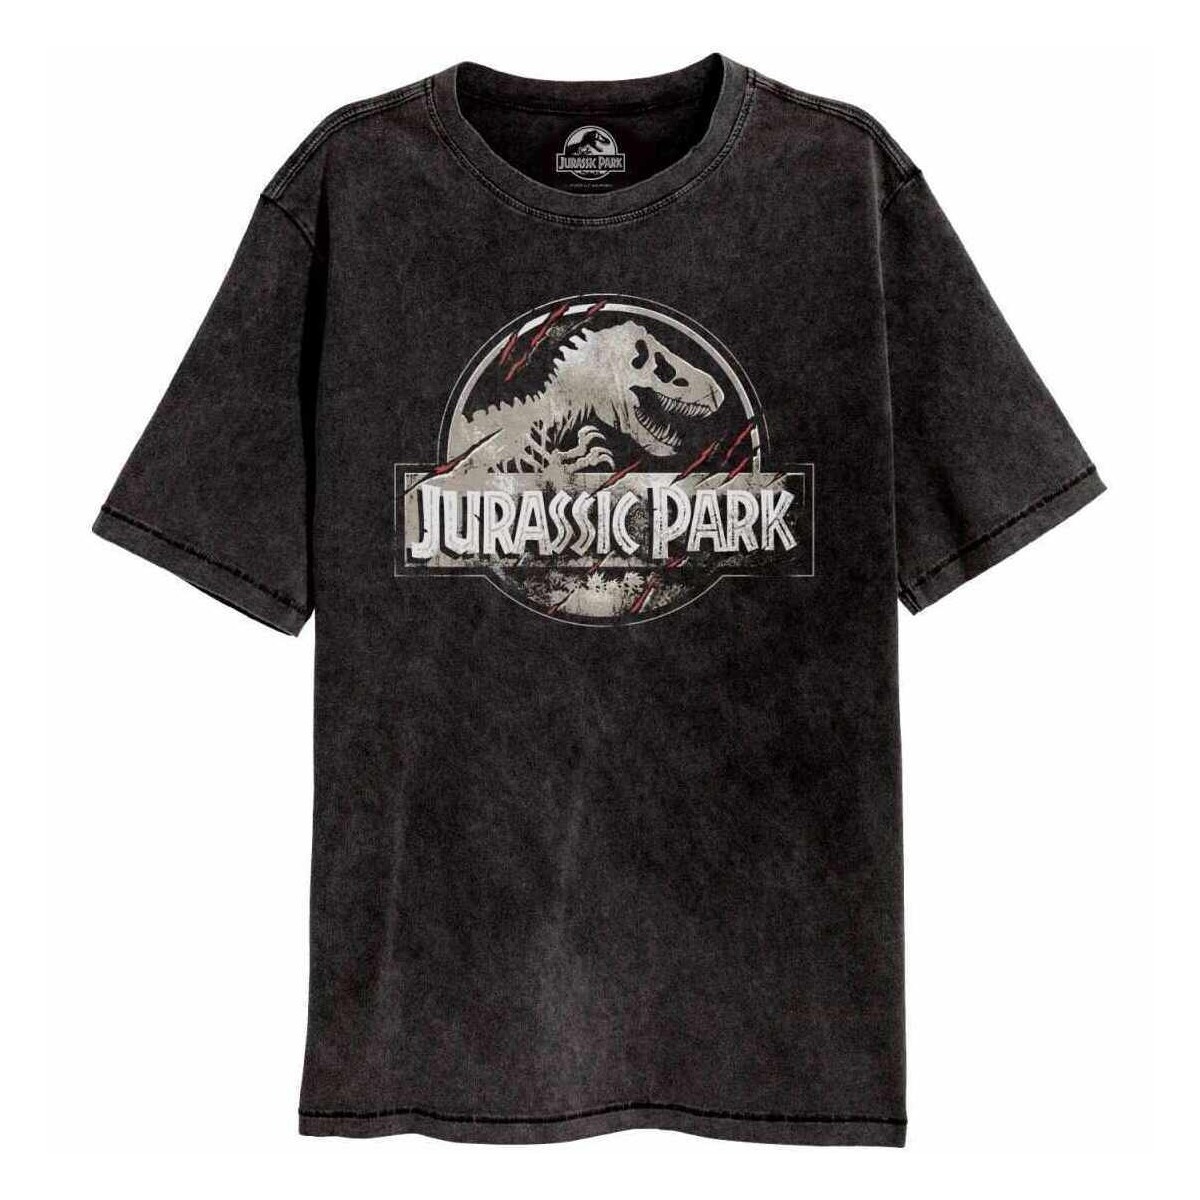 textil Camisetas manga larga Jurassic Park HE794 Negro